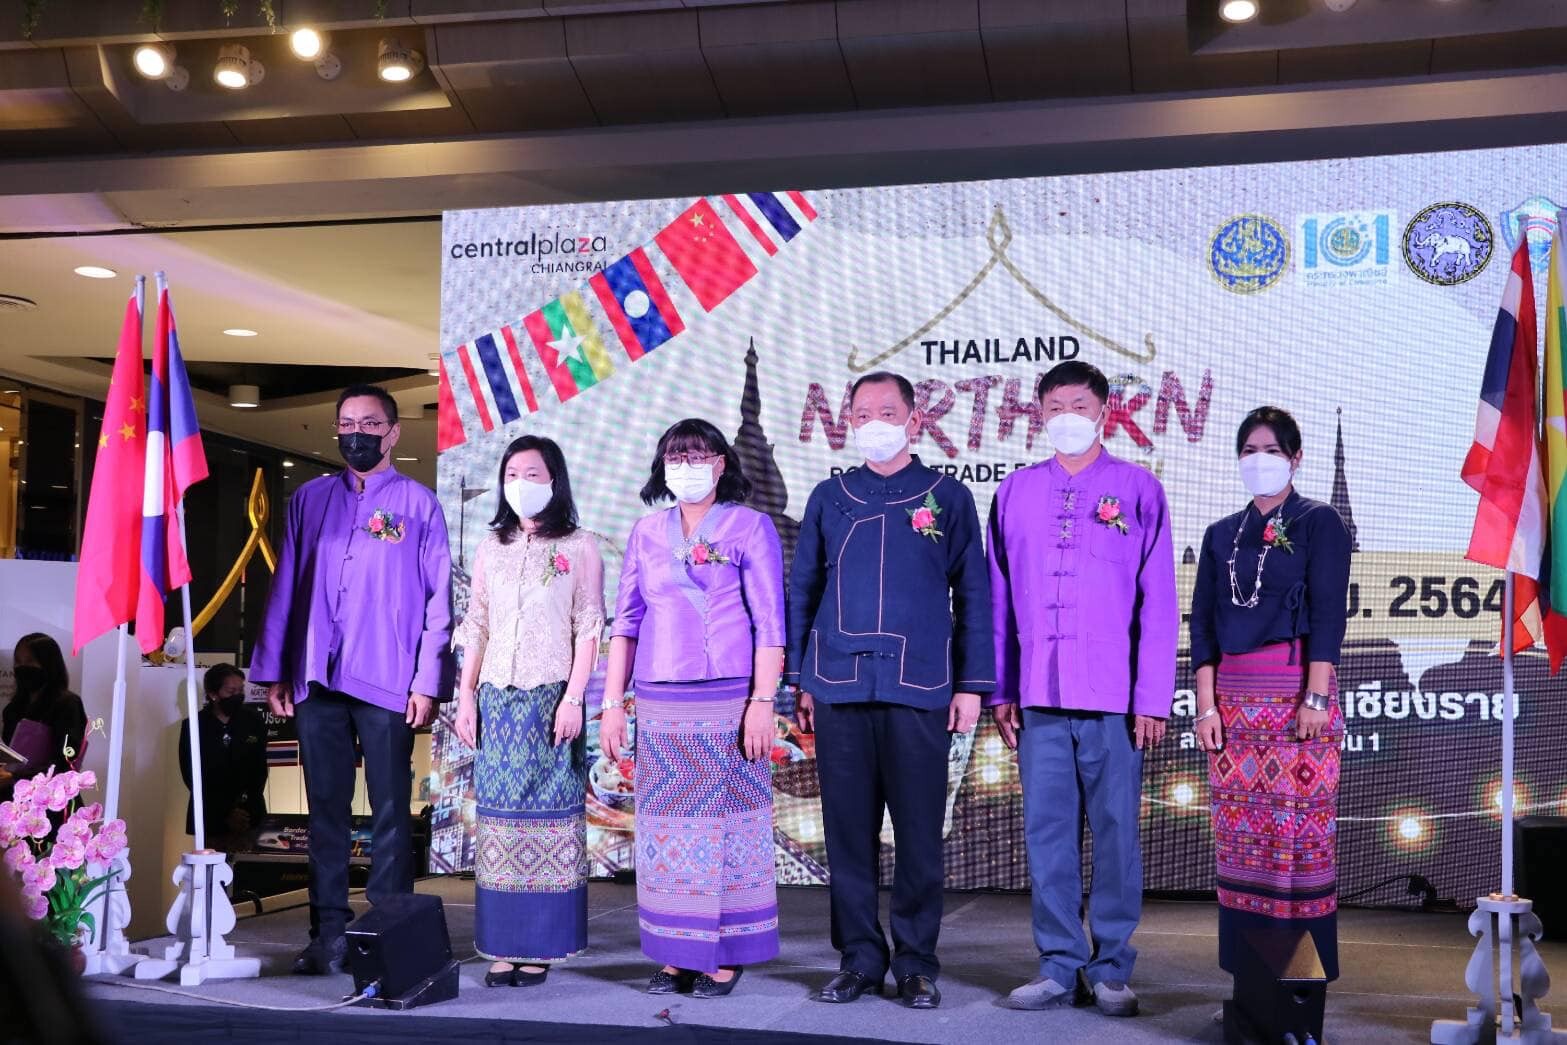 มหกรรม Thailand Northern Border Trade Fair 2021 หรืองานแสดง จำหน่ายสินค้า และเจรจาธุรกิจของผู้ประกอบการของไทย-เมียนมา-สปป.ลาว-จีน ของพาณิชย์ 17 จังหวัด กลุ่มภาคเหนือ